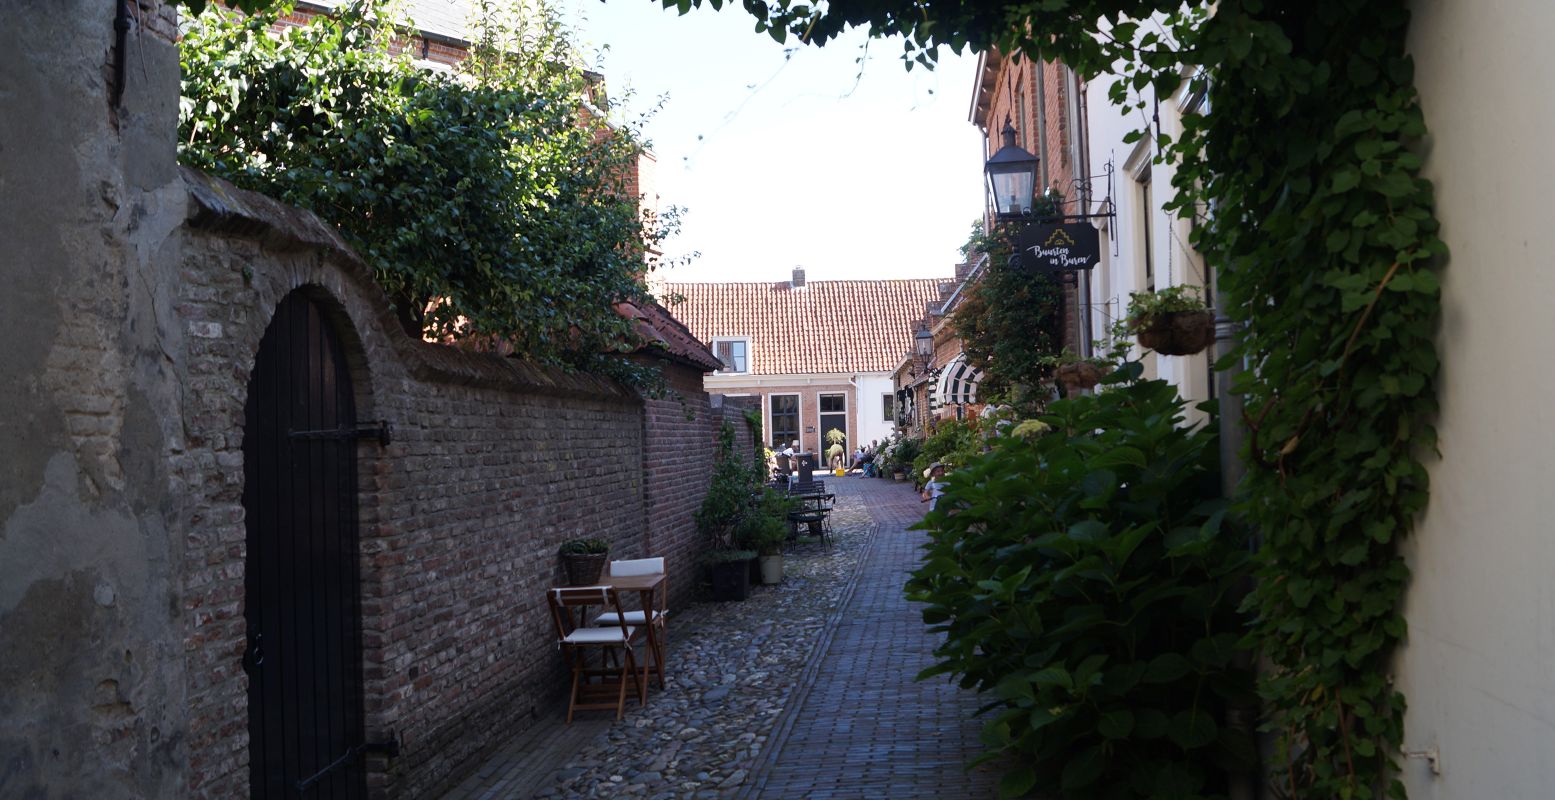 In dit schattige straatje (Gasthuisstraat) achter de Sint Lambertuskerk kun je overnachten. Foto: DagjeWeg.NL / Grytsje Anna Pietersma